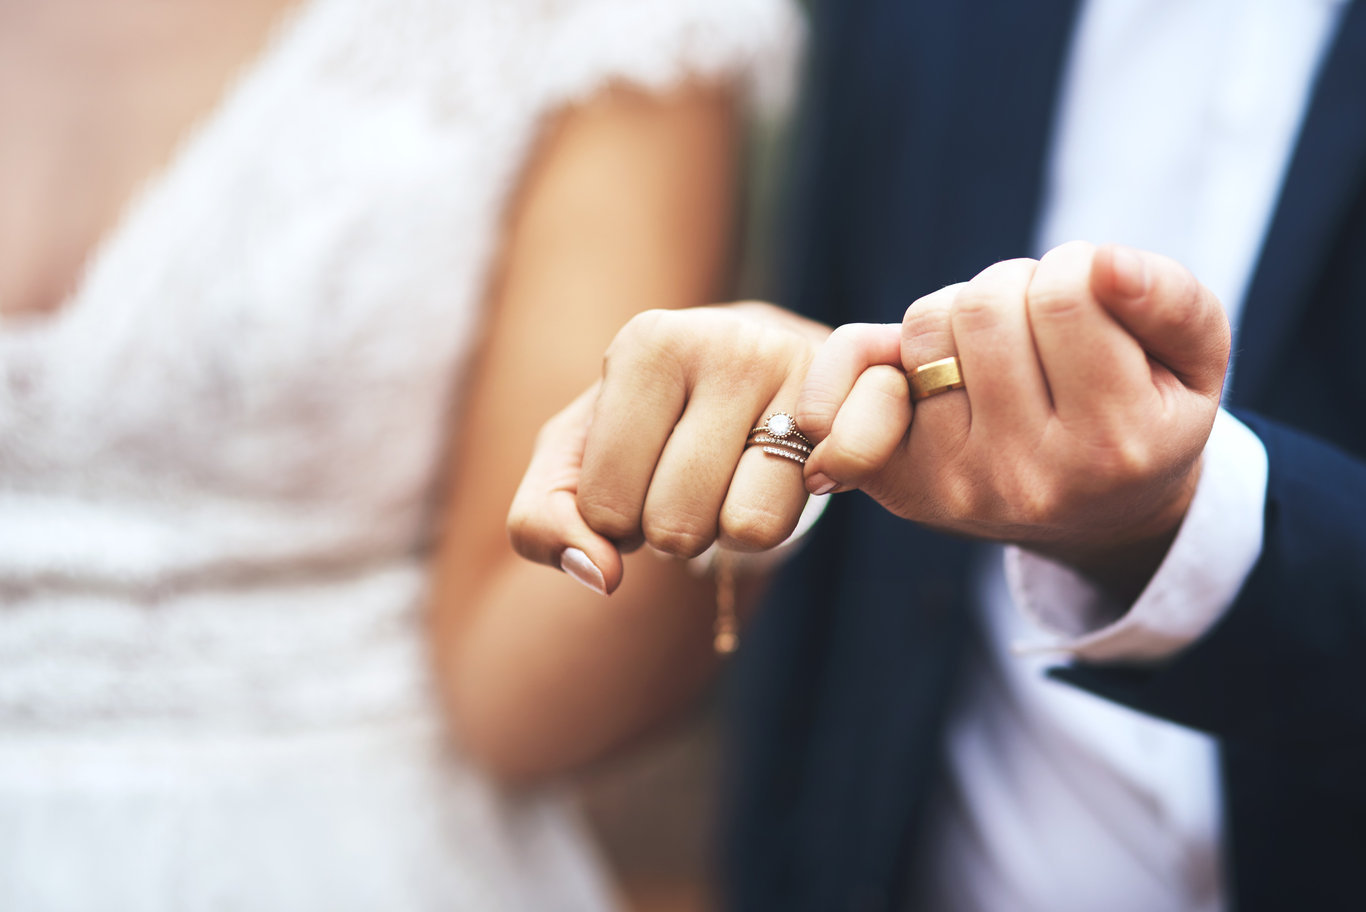 EVLİLİK KREDİSİ BAŞVURU ŞARTLARI 2023 | Yeni evleneceklere 150 bin TL faizsiz evlilik kredisi başvuru nasıl, nereden yapılır ve kimler başvurabilir ve kaç vade?